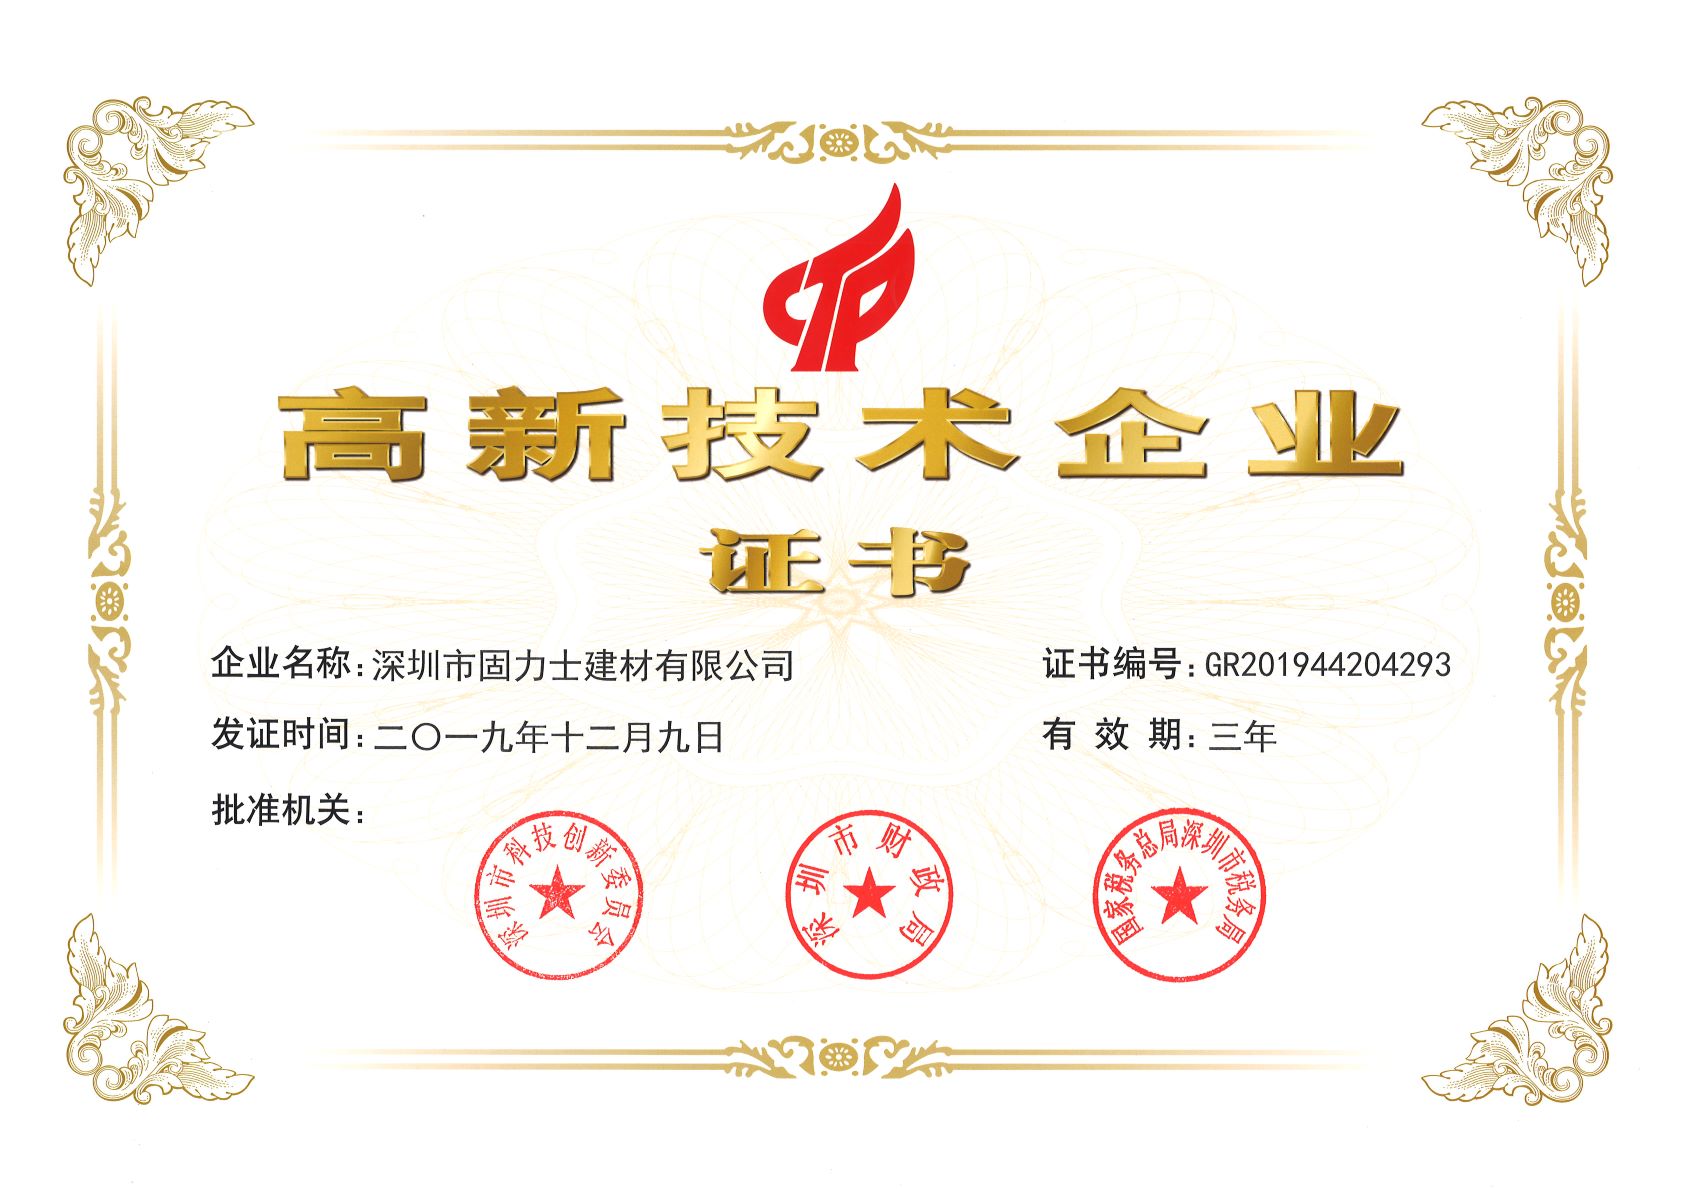 德清热烈祝贺深圳市固力士建材有限公司通过高新技术企业认证